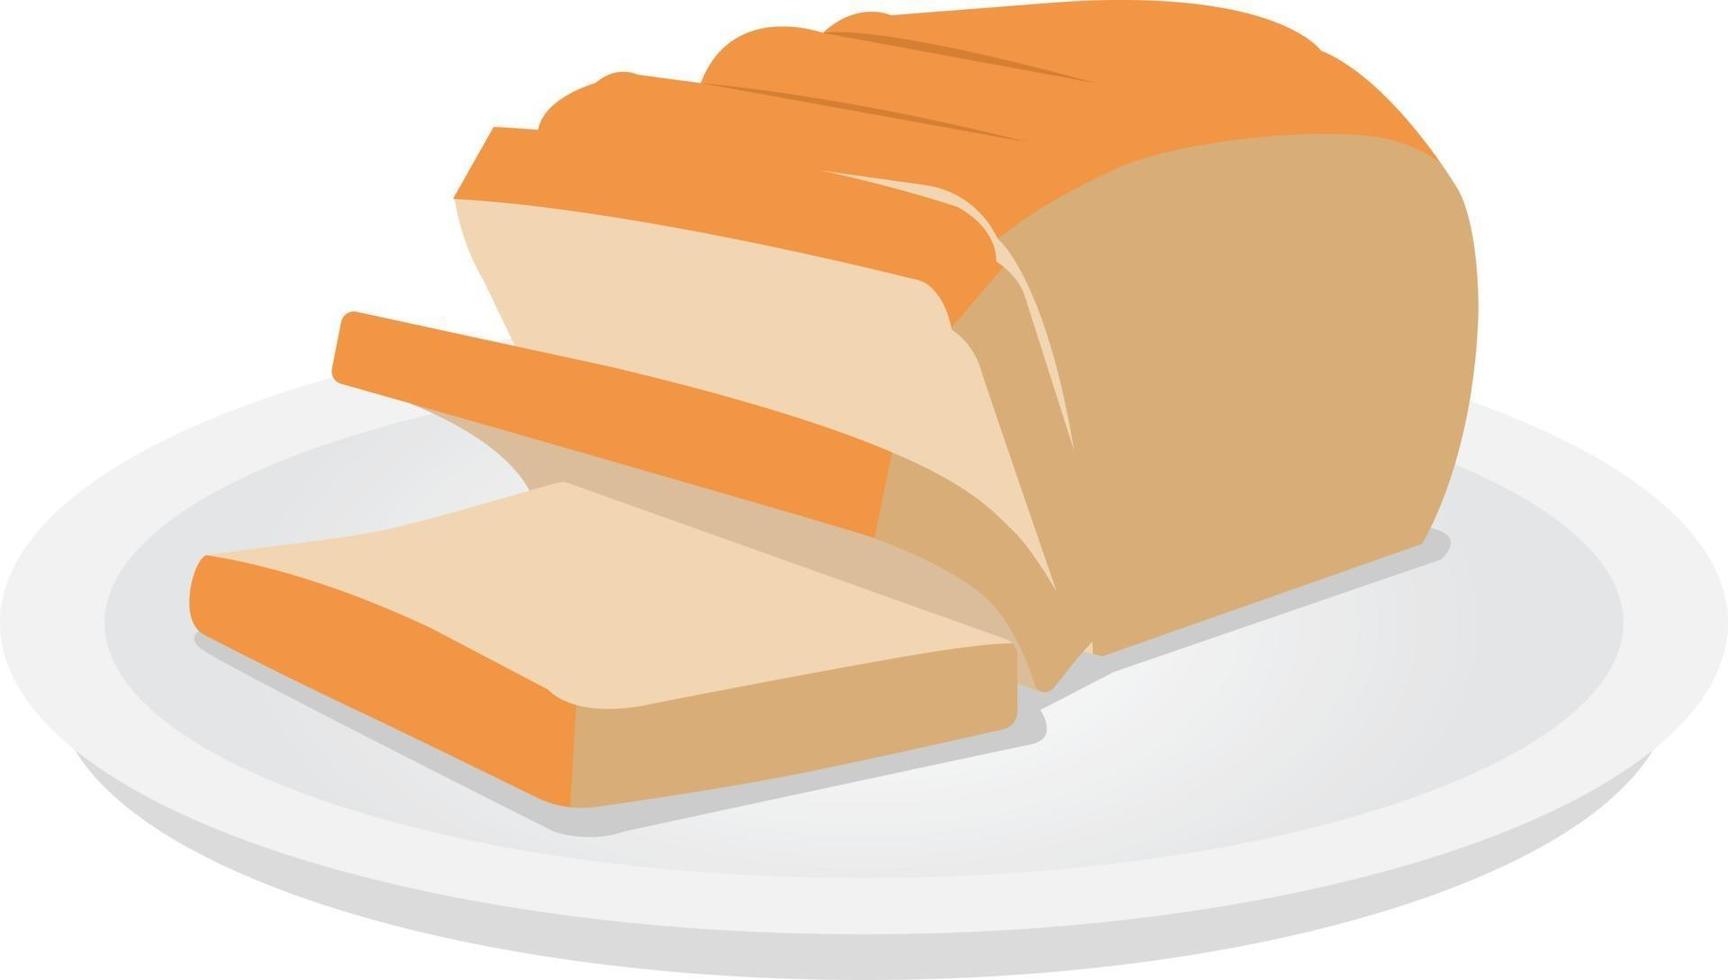 fetta di pane sul piatto disegno vettoriale piatto.panino bianco a fette.pagnotta di pane a fette sul piatto